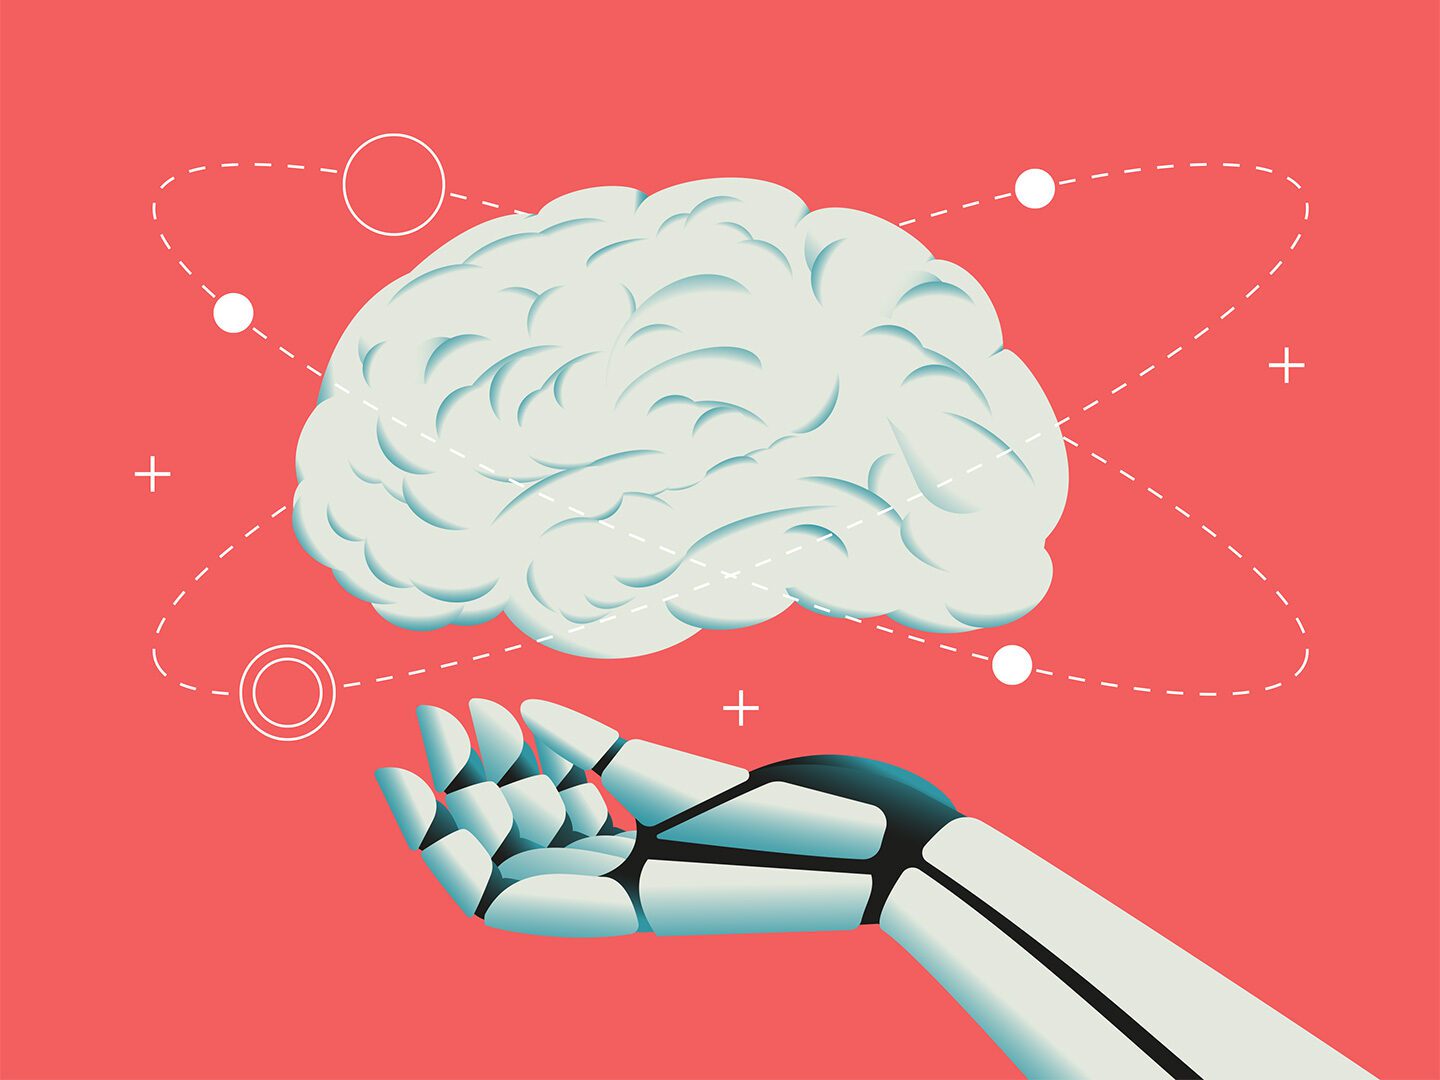 Eine Illustration eines Gehirns und einer Roboterhand, welche Künstliche Intelligenz darstellt.